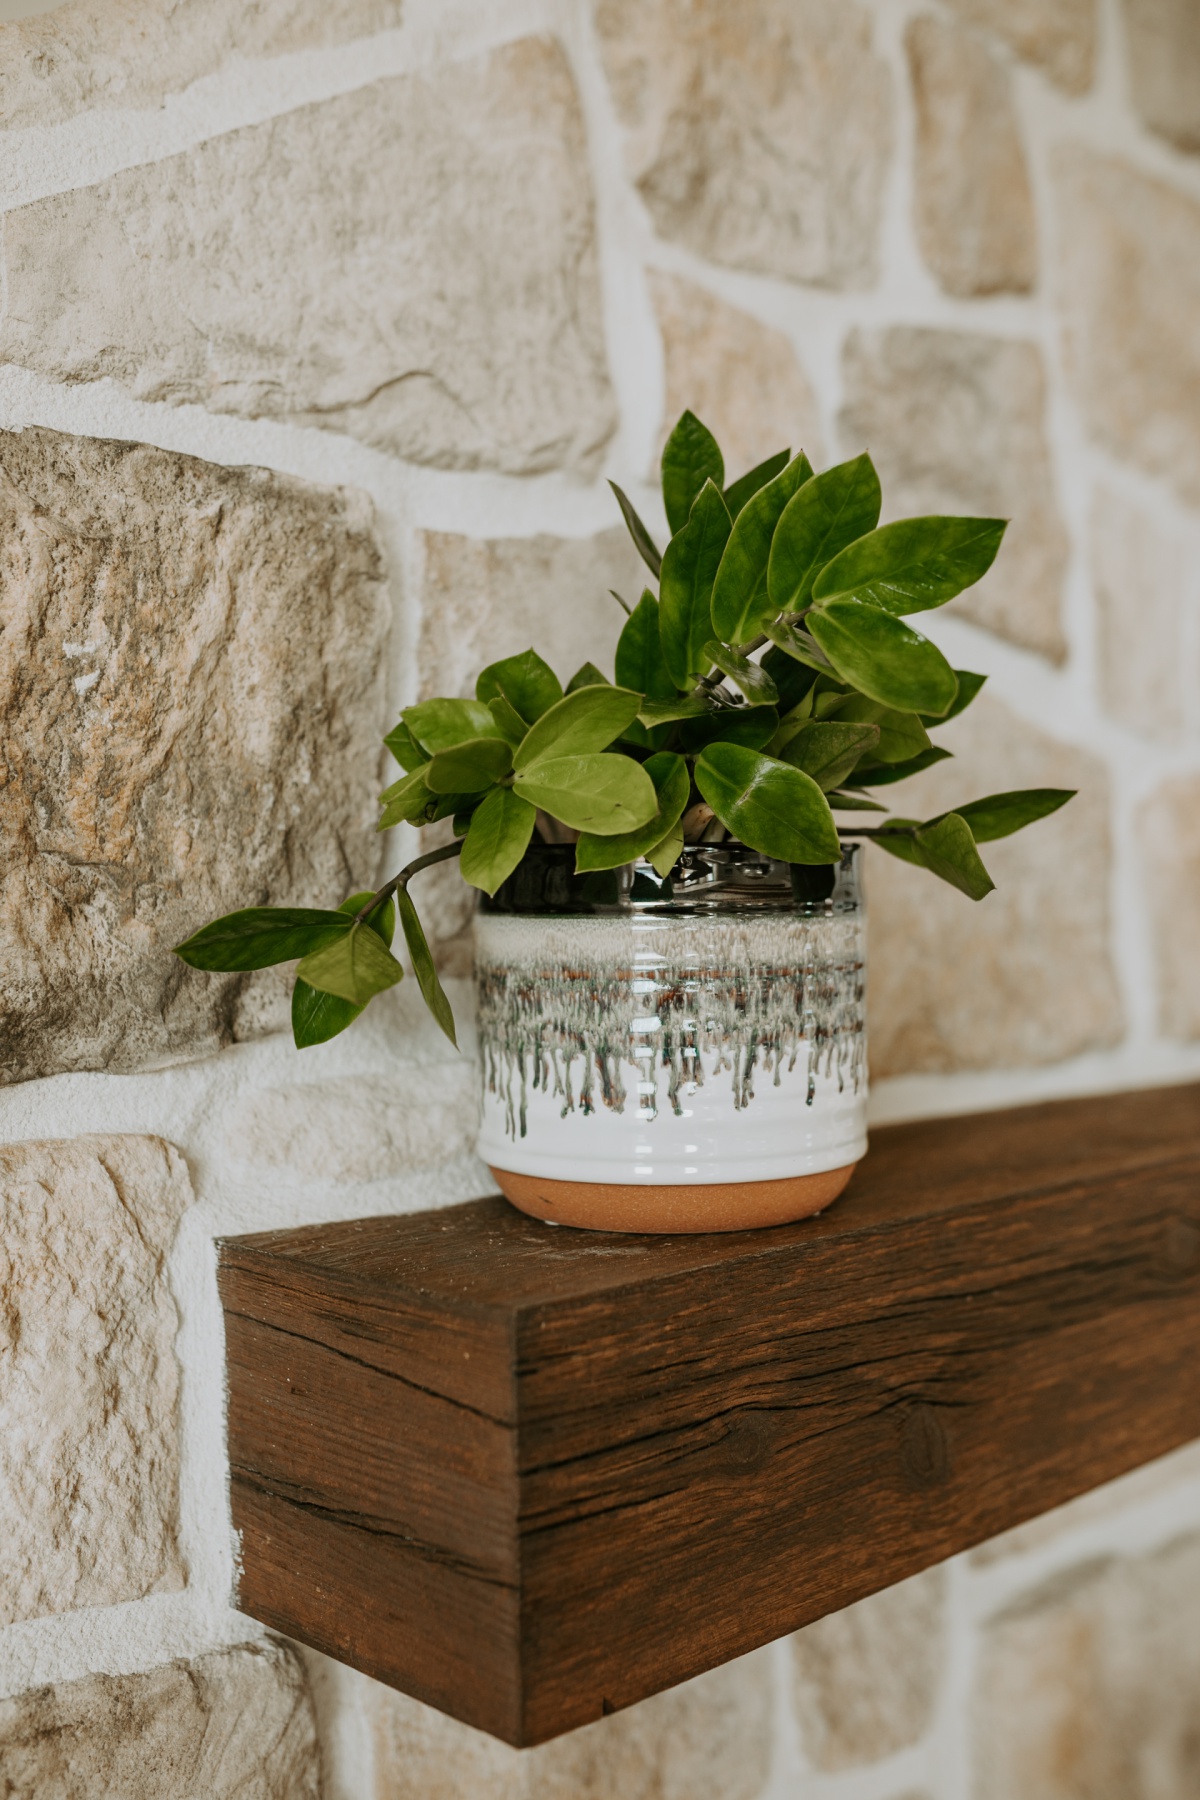 Walmart clay and glazed pot with foliage plant